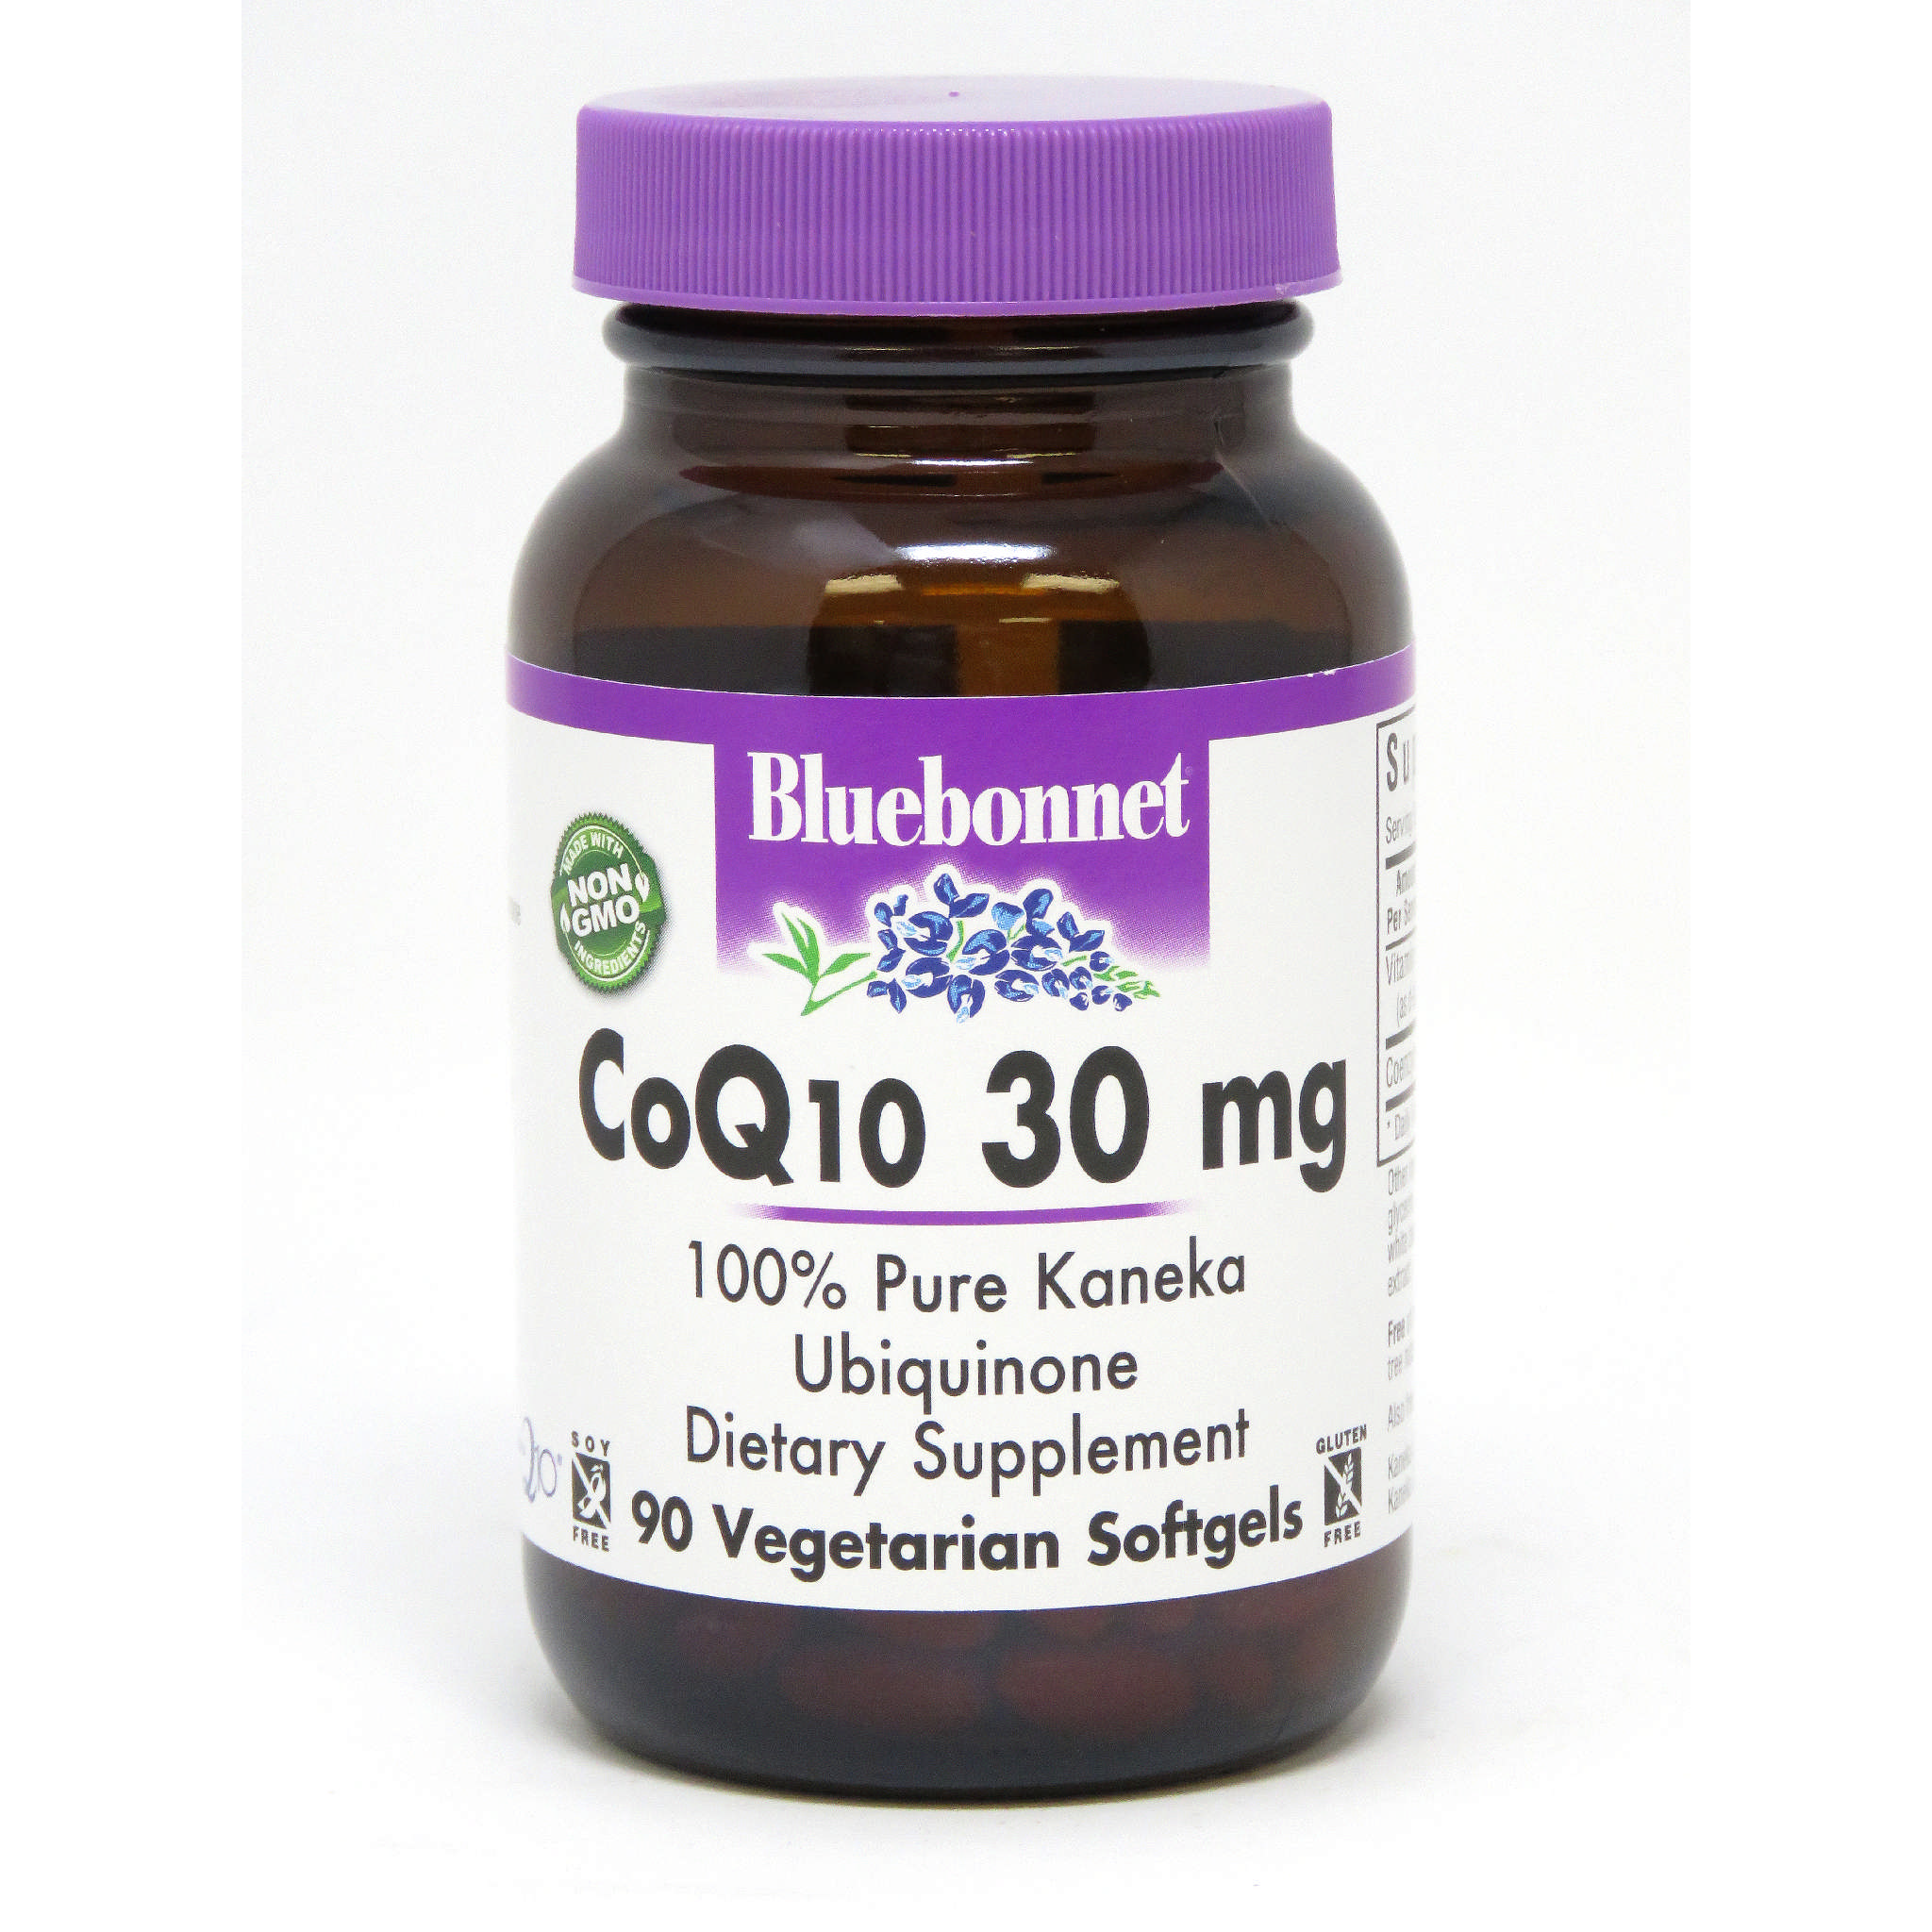 Bluebonnet - Coq10 30 mg softgel